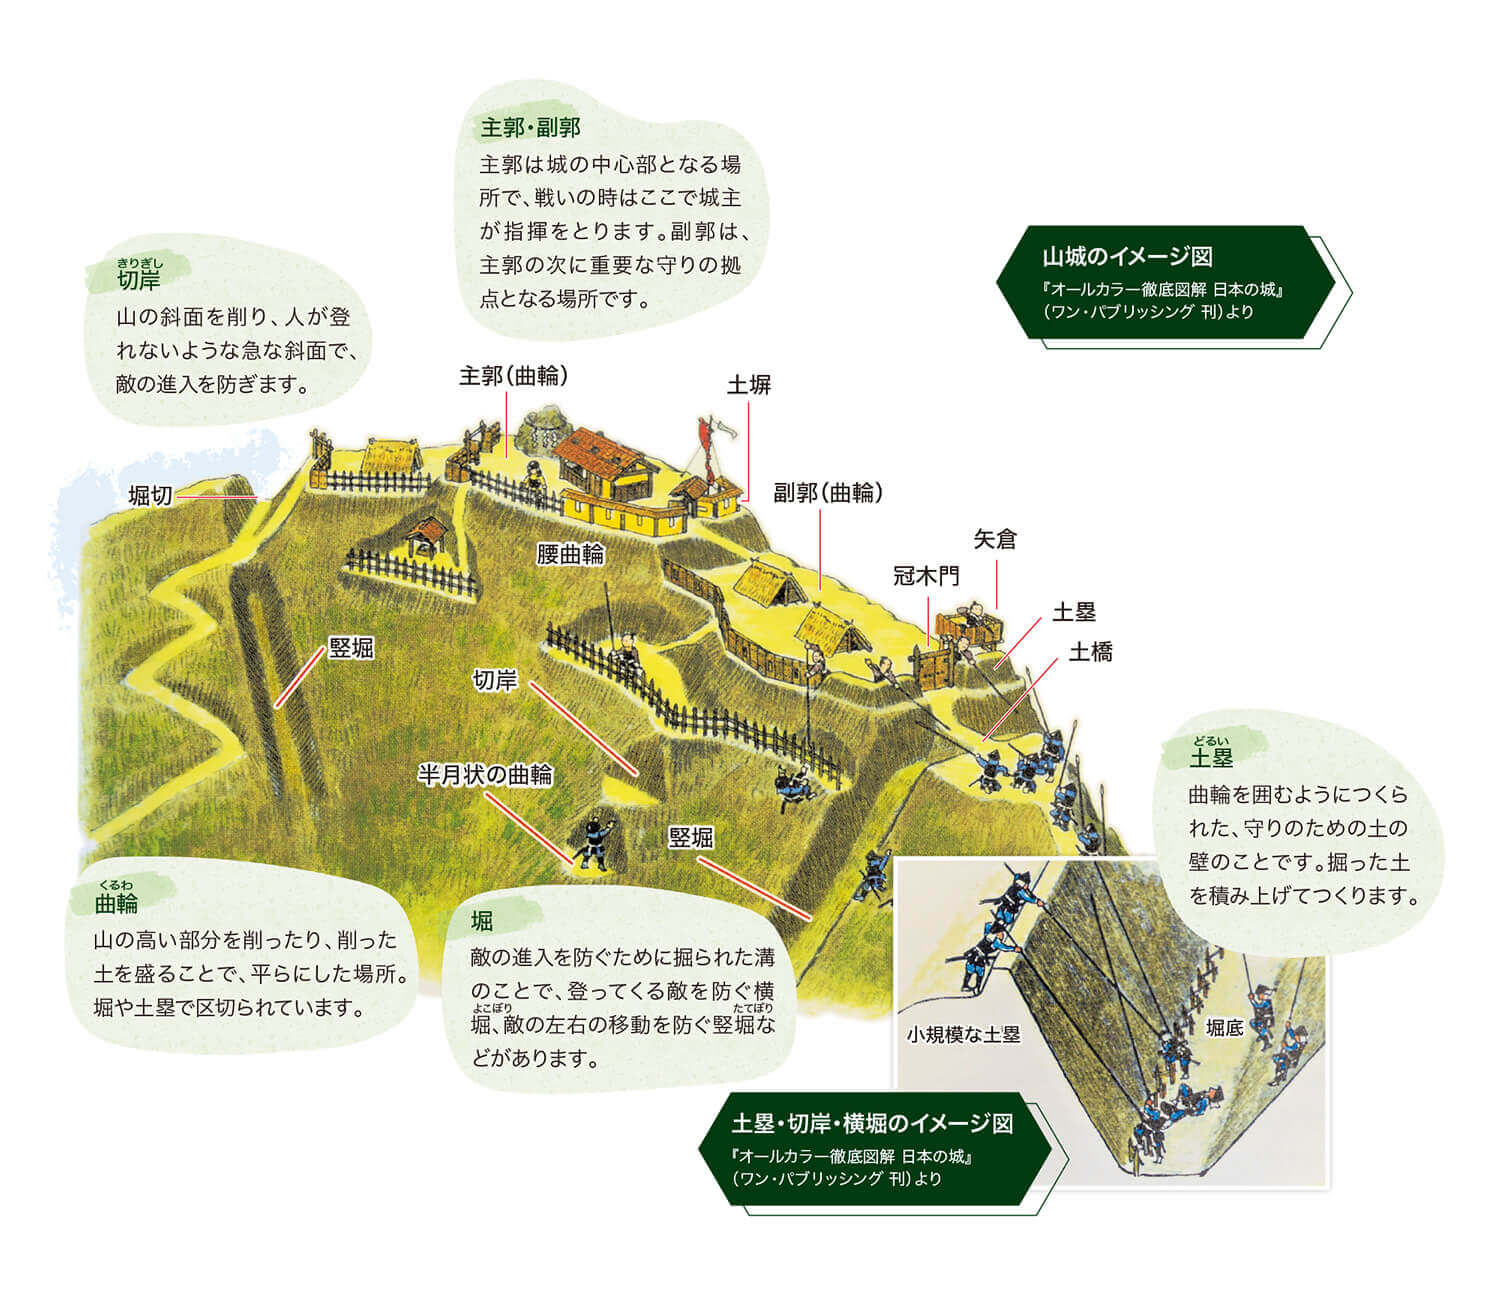 山城のイメージ図